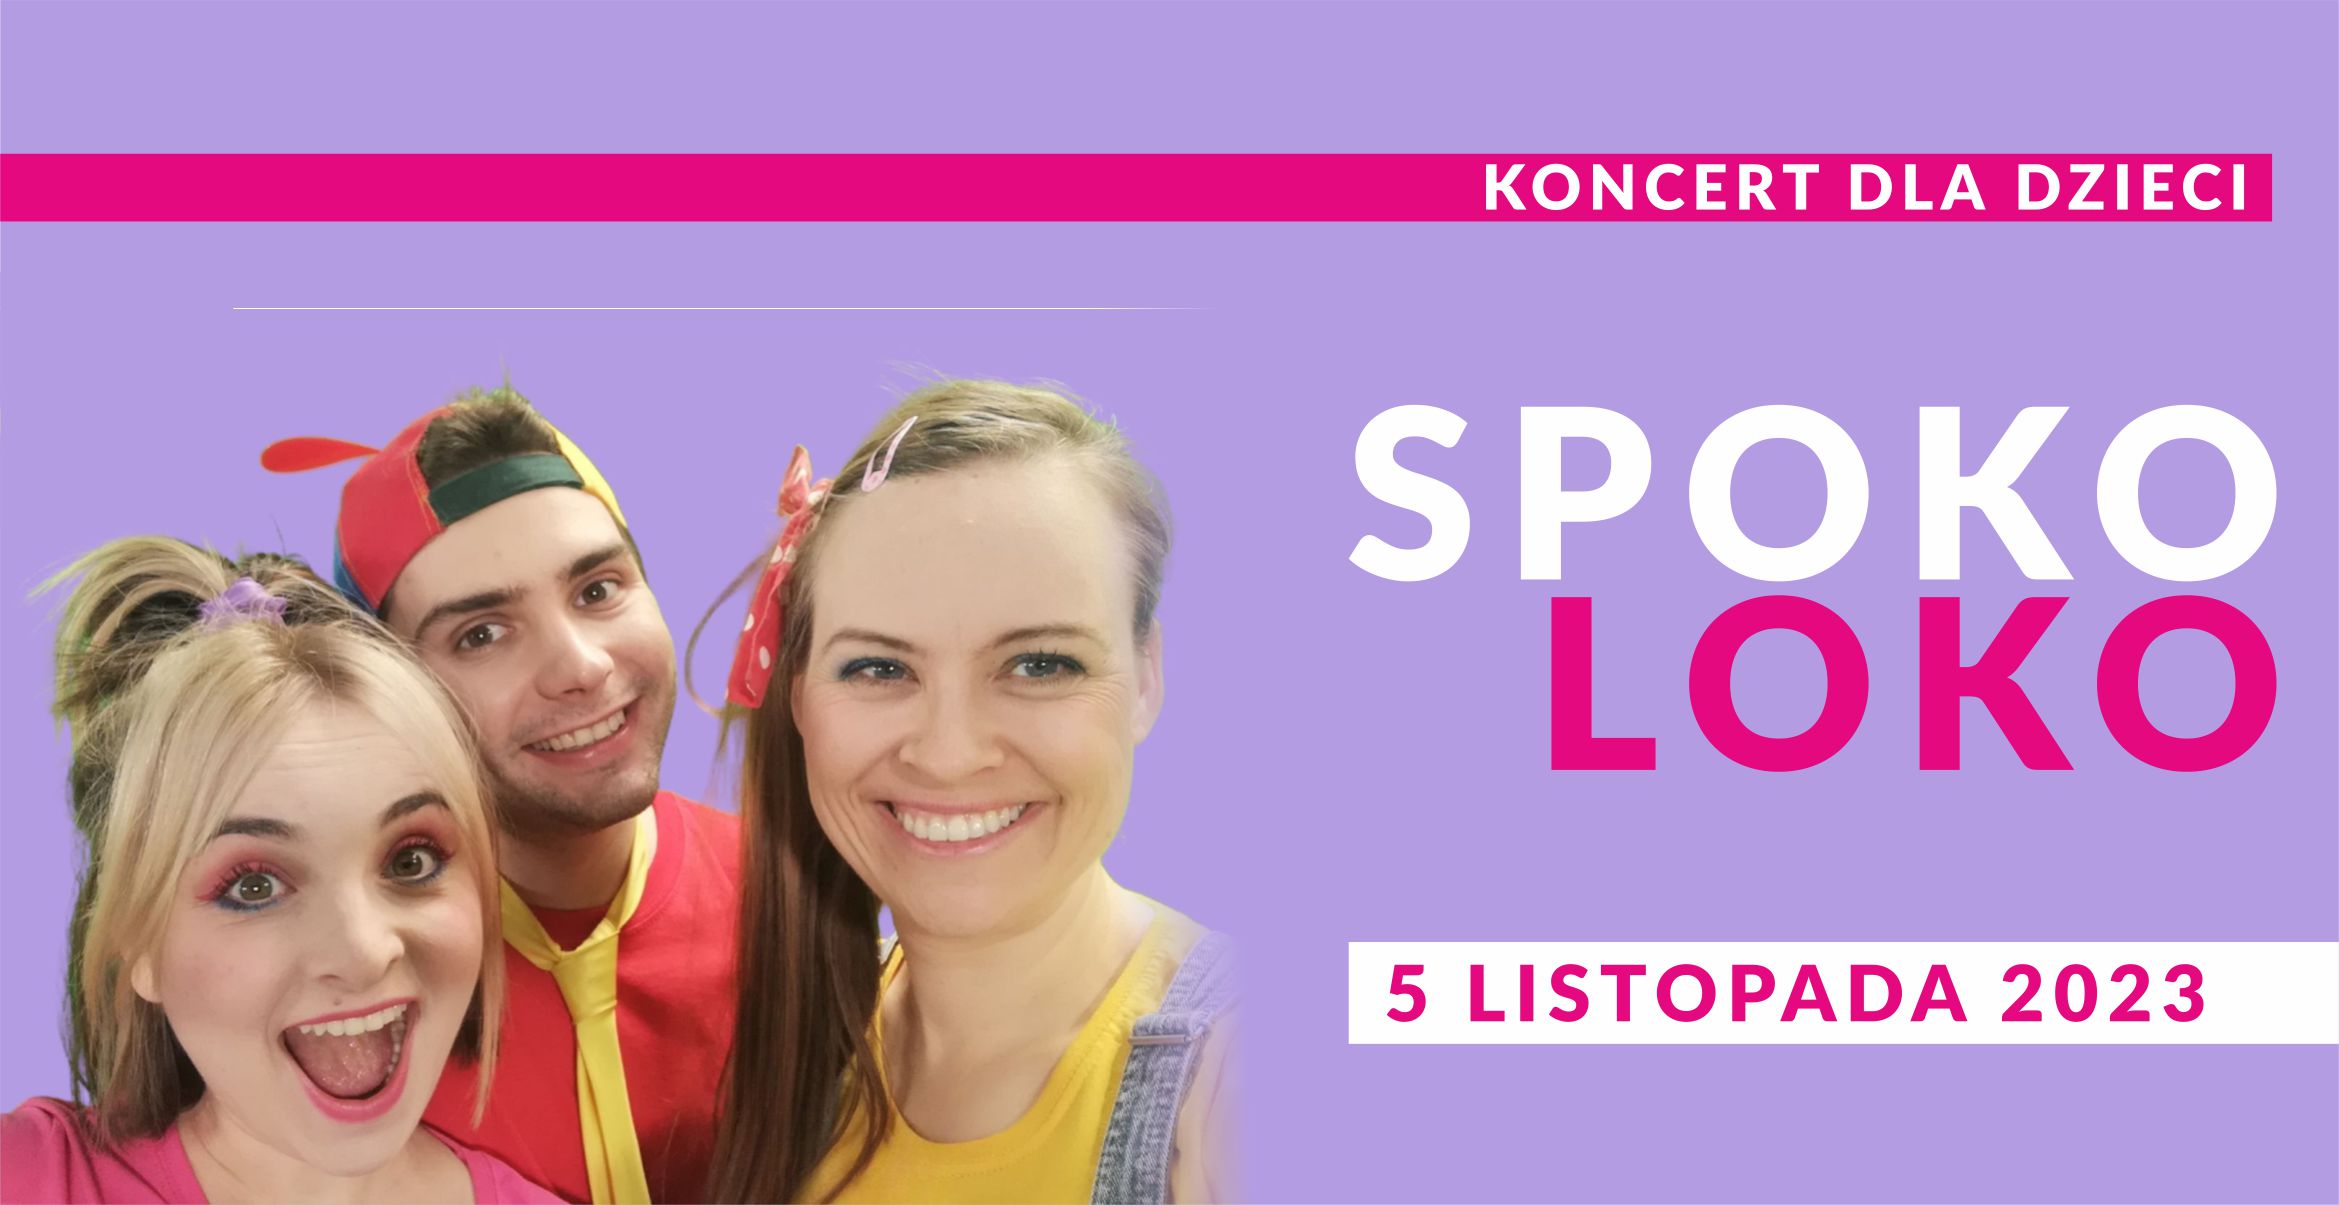 Fioletowy baner koncertu dla dzieci Spoko Loko